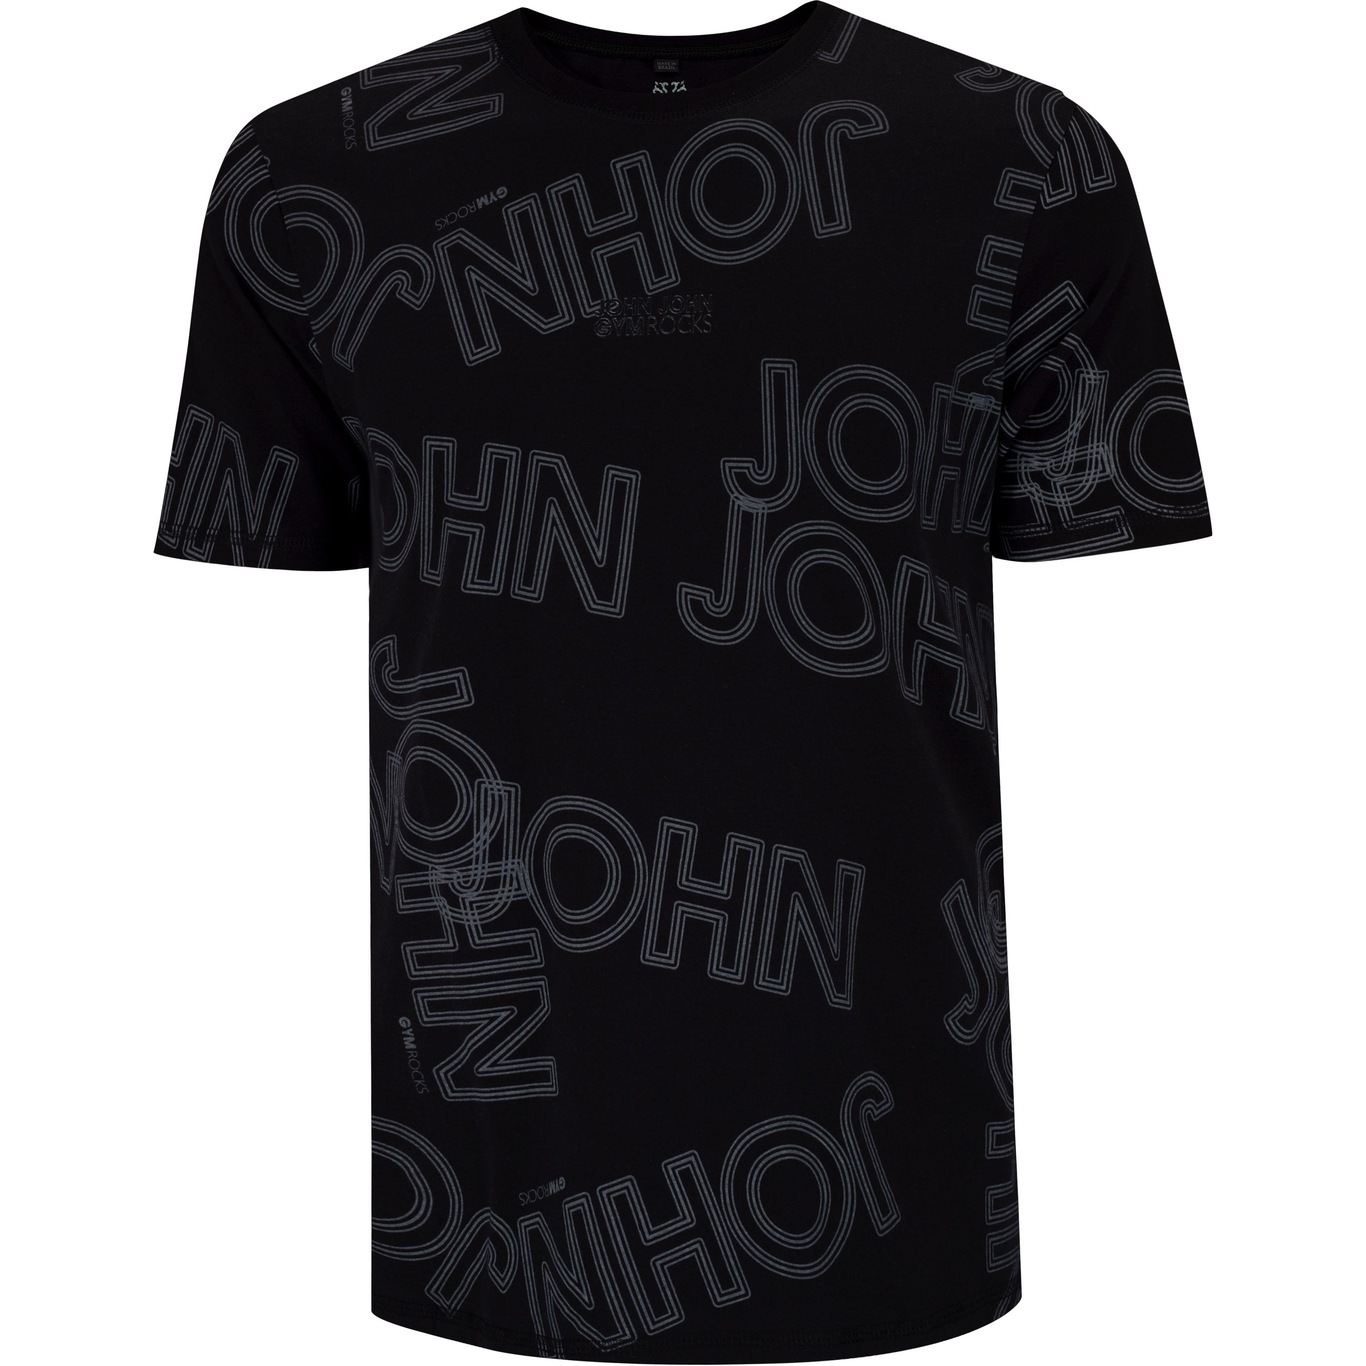 Camiseta John John Free Motion Preta - Compre Agora